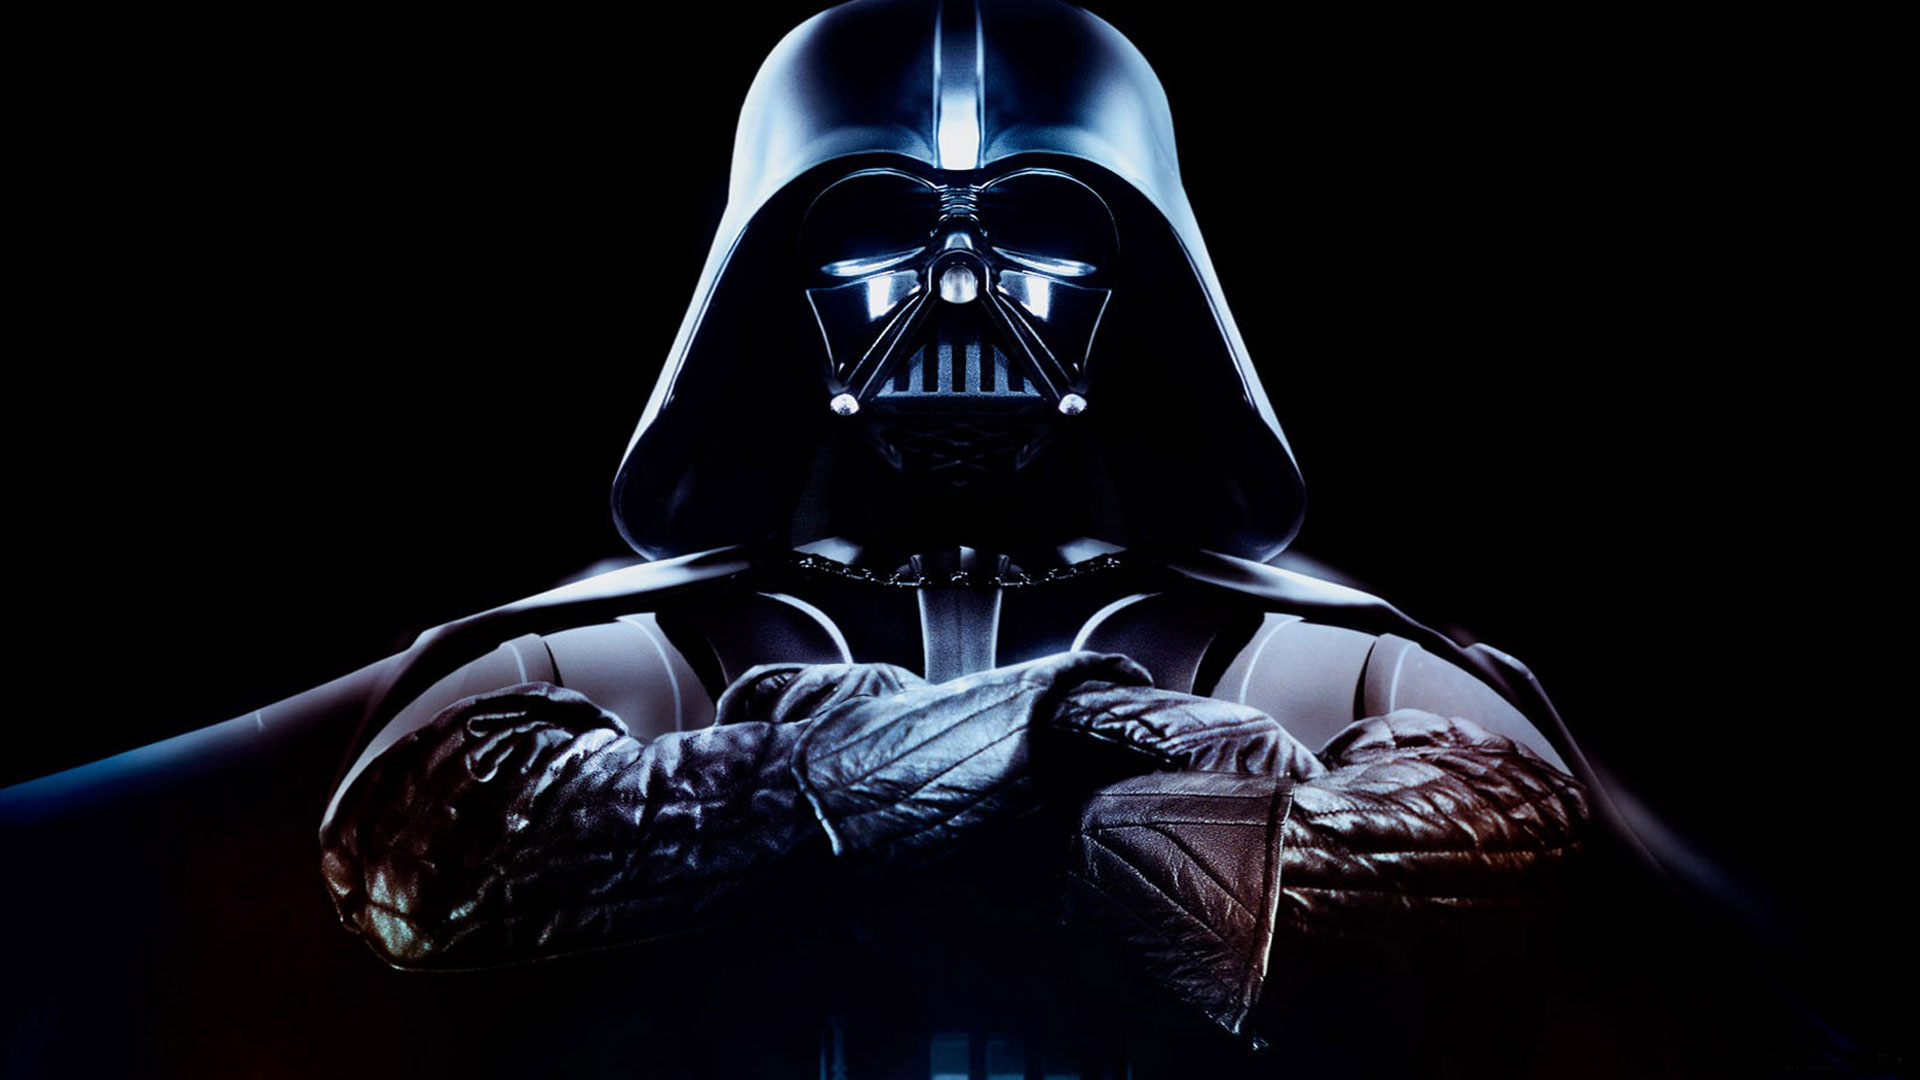 Star Wars Darth Vader Wallpaper Photo HD 1080p